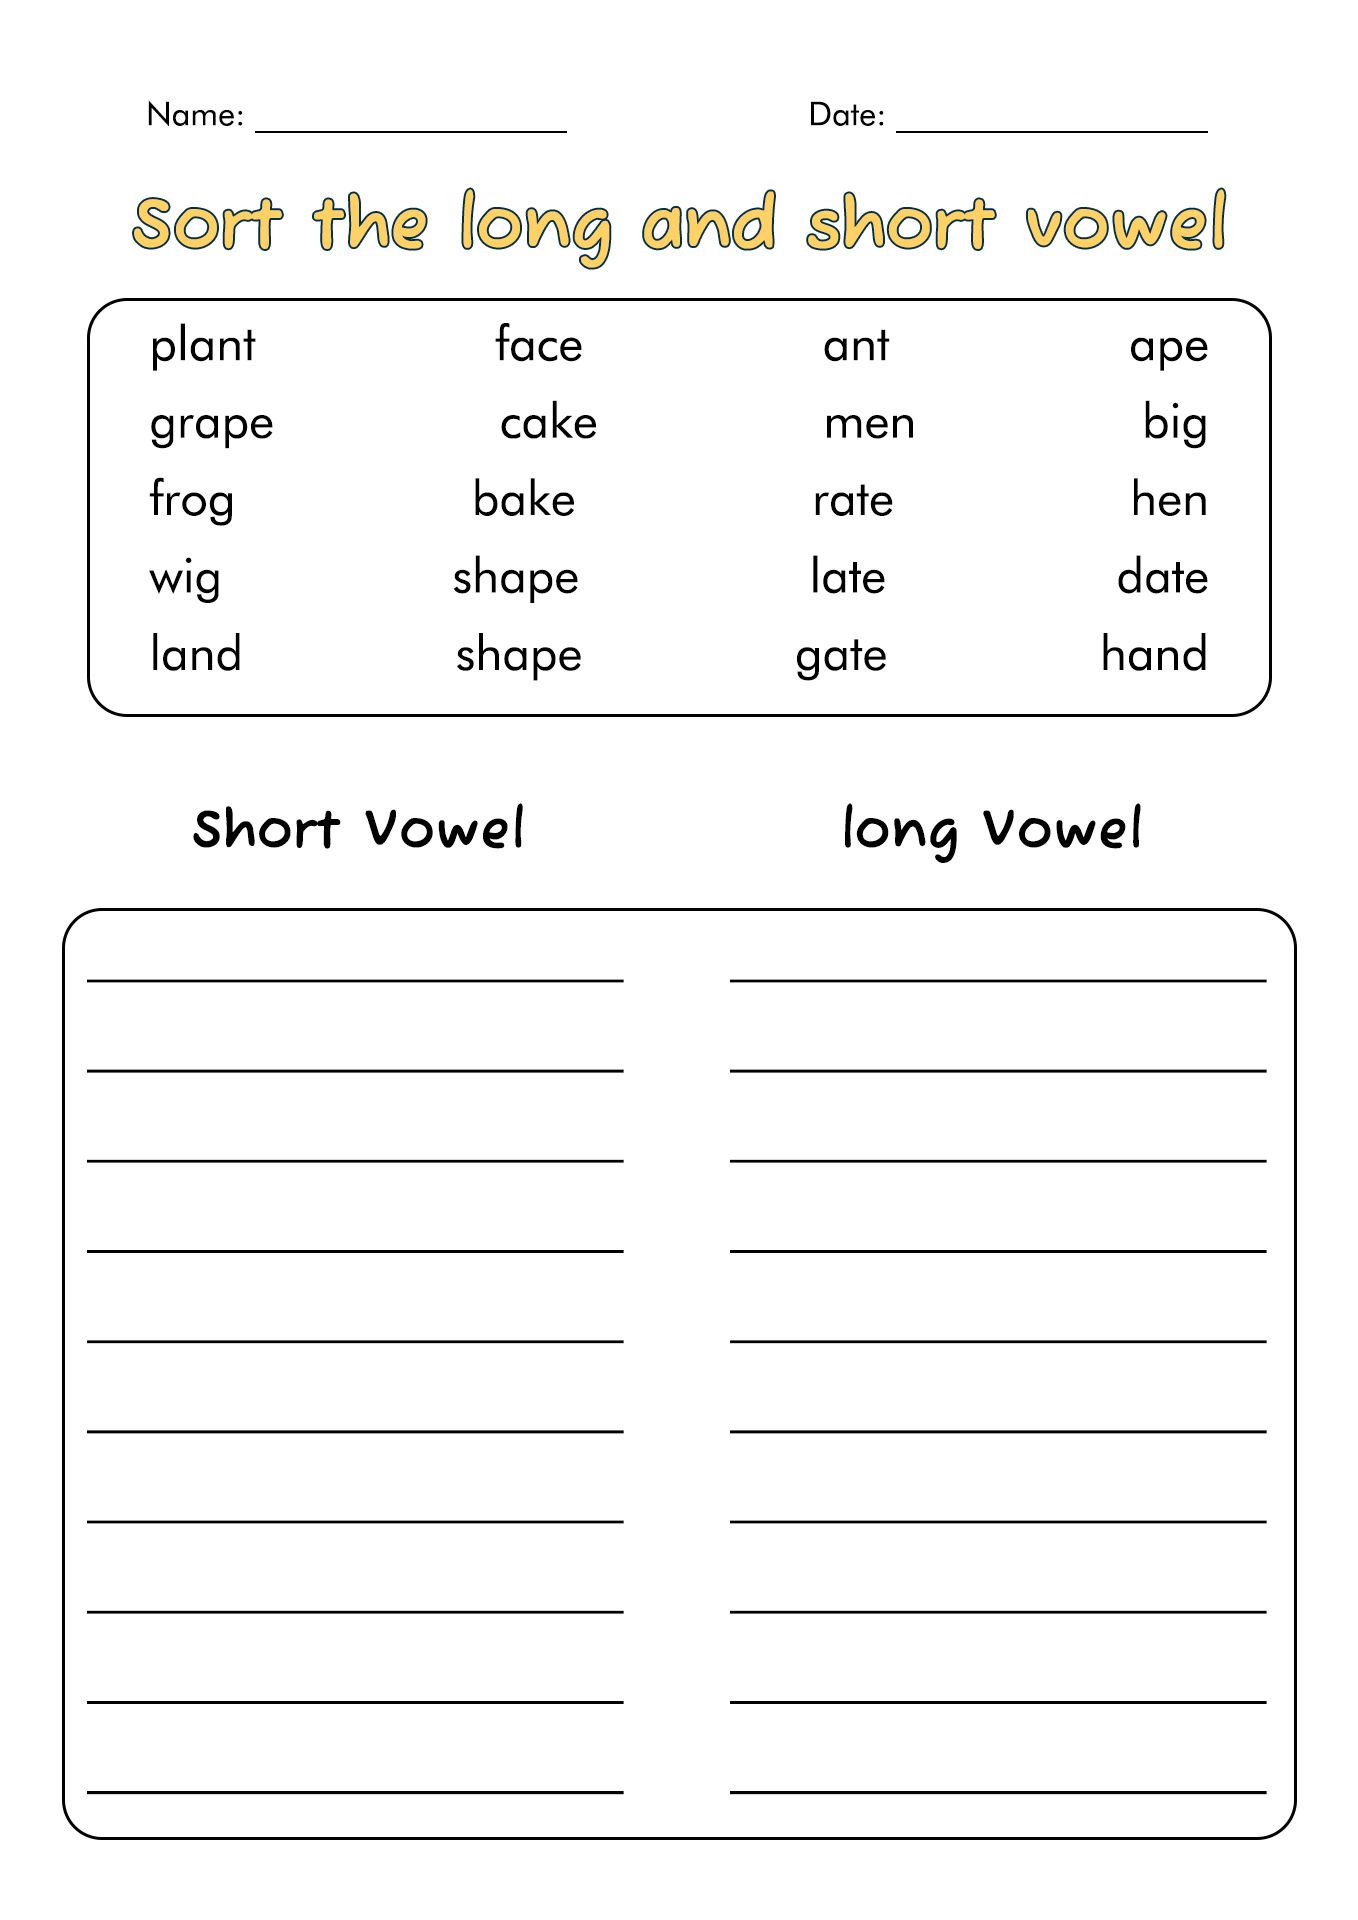 Short Long Vowel Worksheets 2nd Grade Image